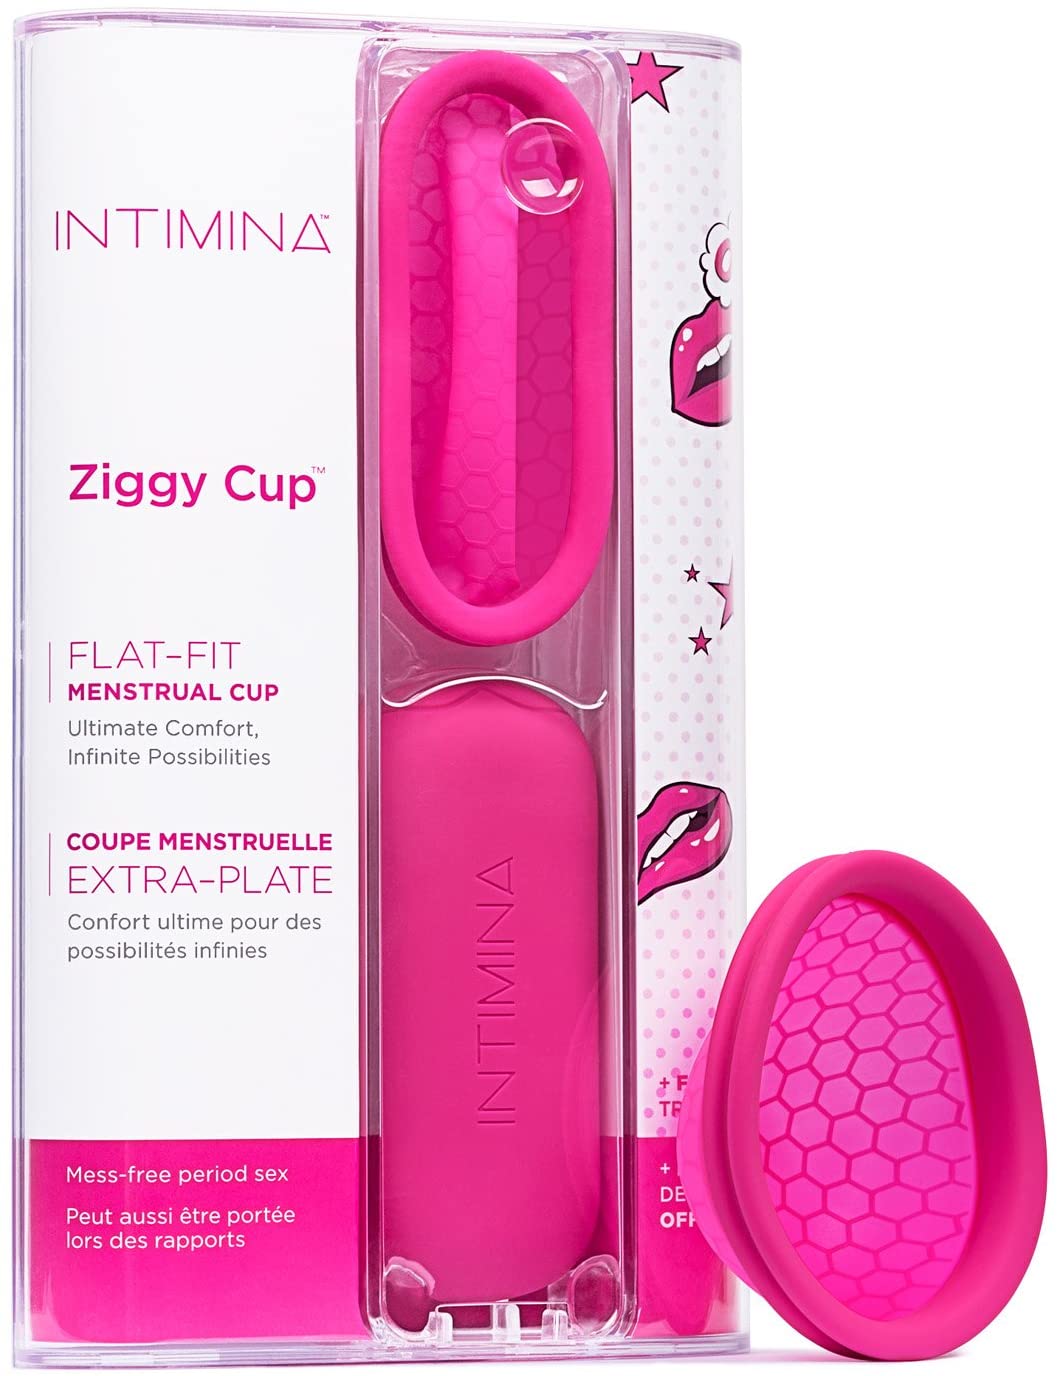 Ziggy Menstrual Cup #6140 - Intimina Available at Online Family Pharmacy Qatar Doha